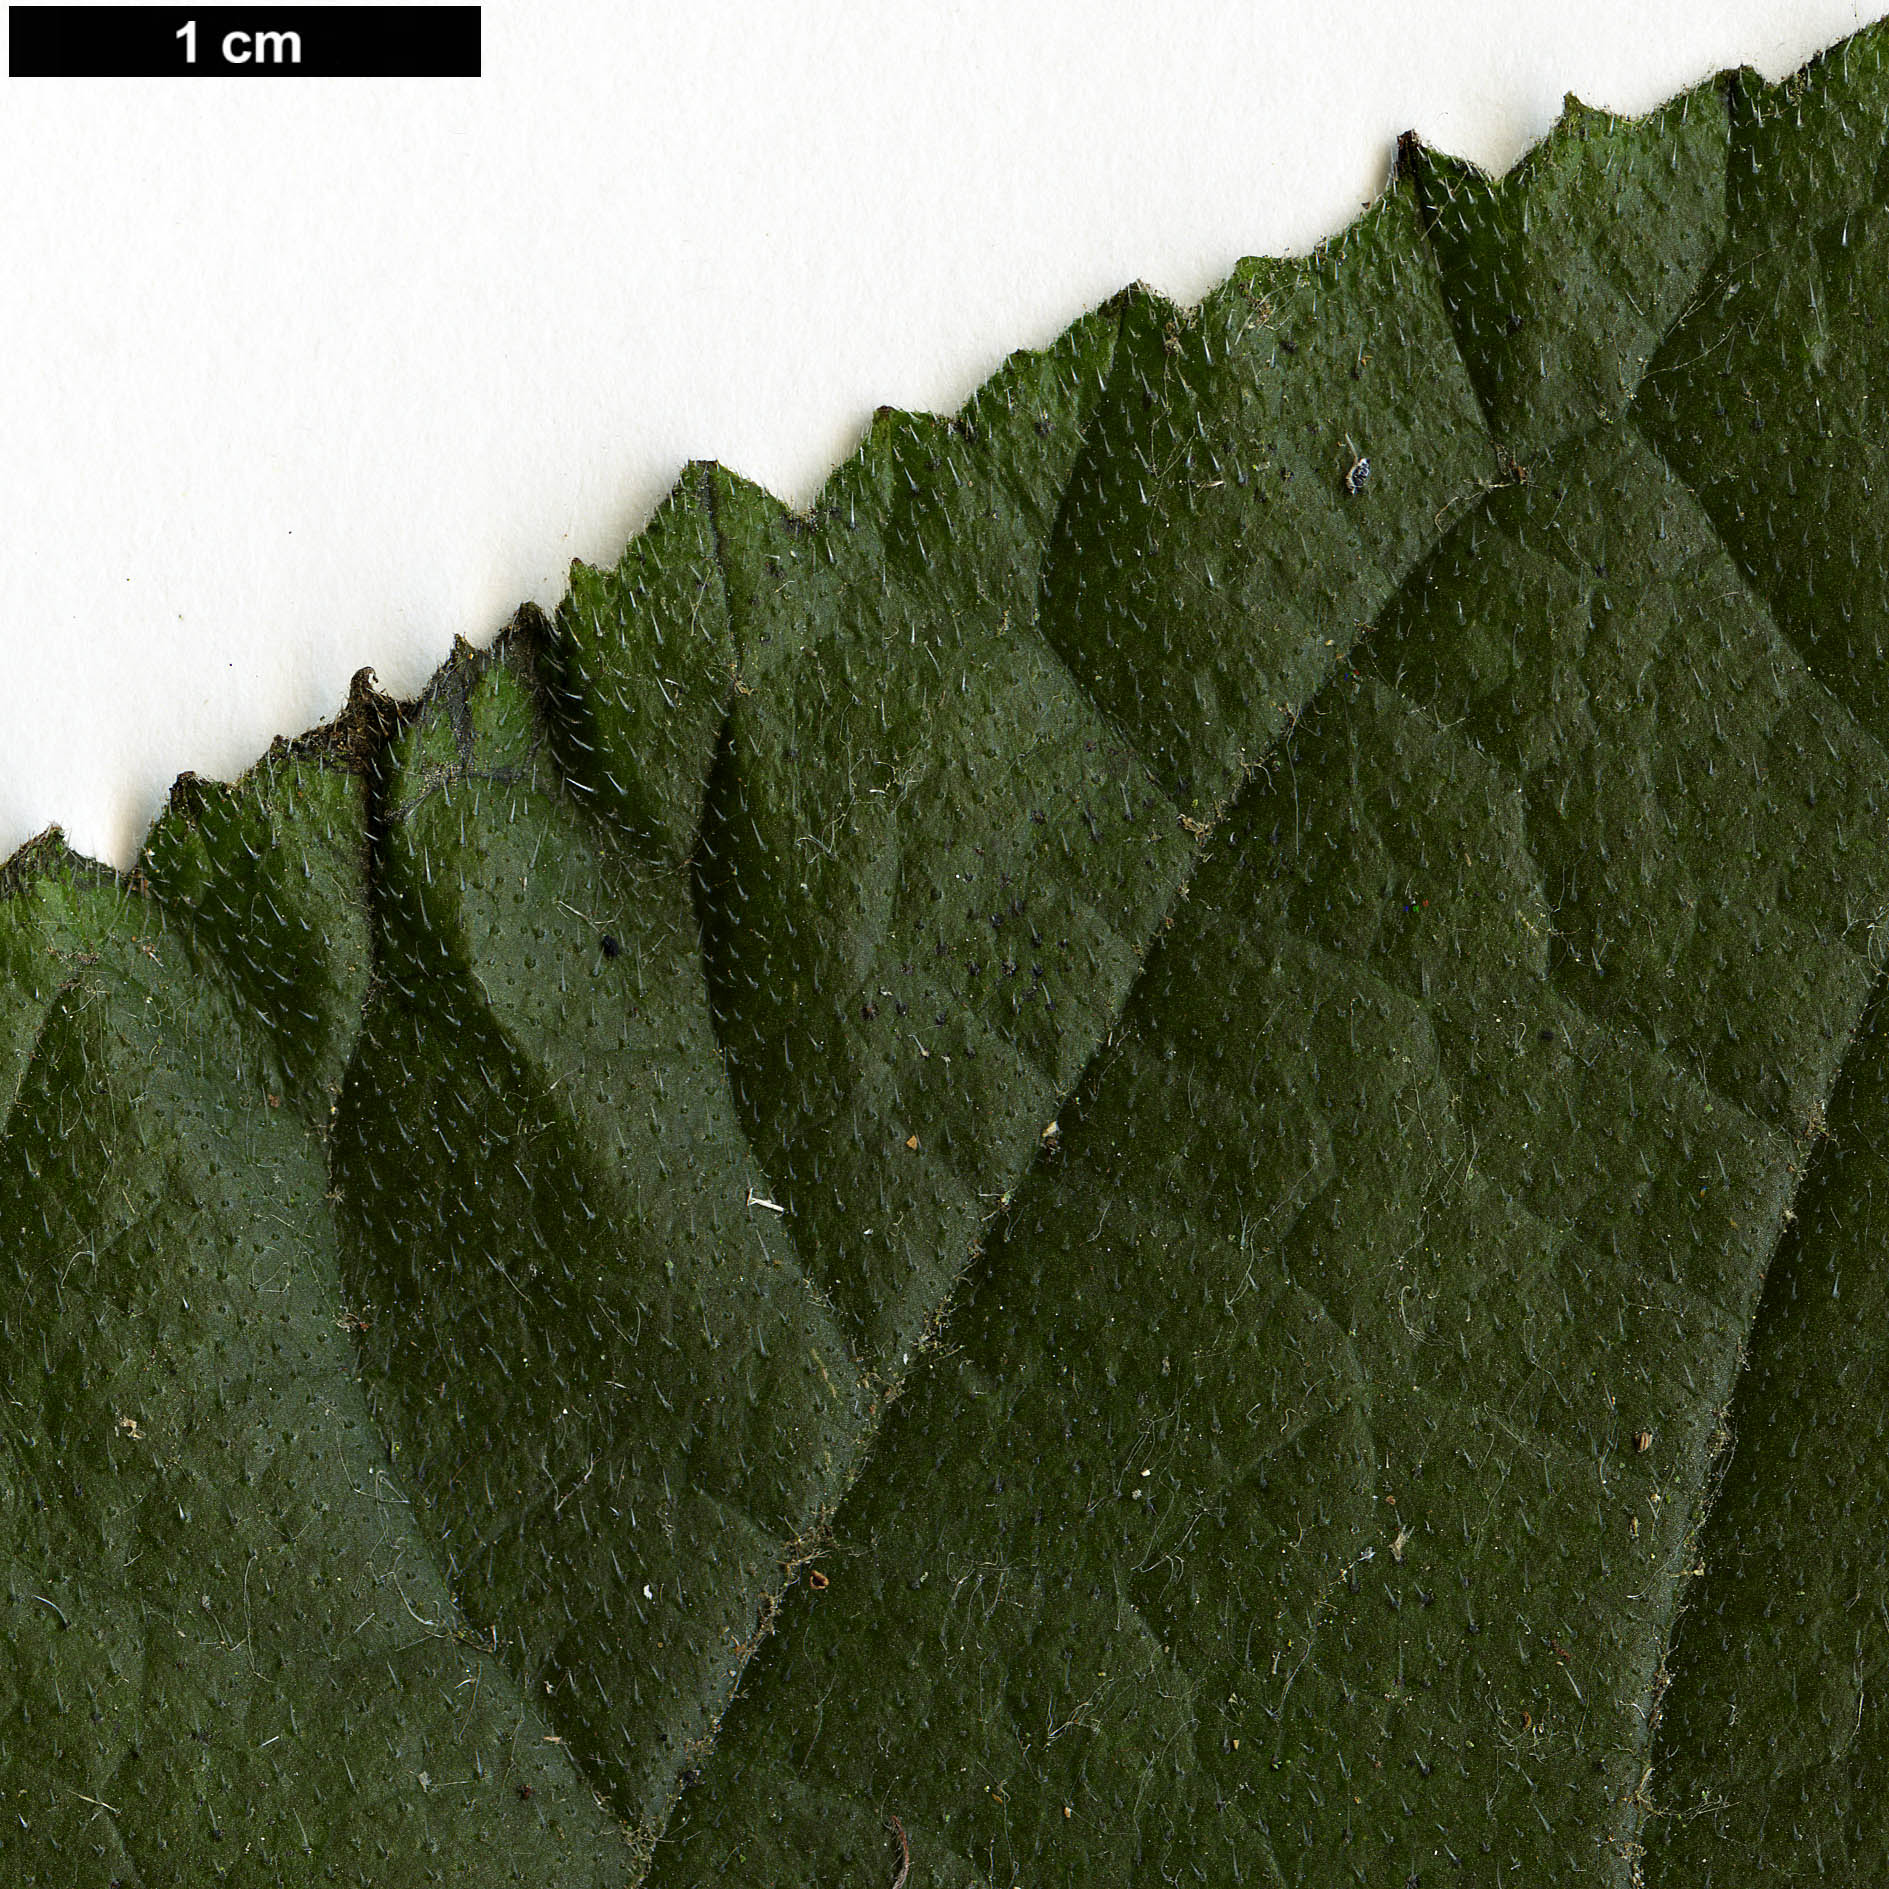 High resolution image: Family: Boraginaceae - Genus: Ehretia - Taxon: dicksonii